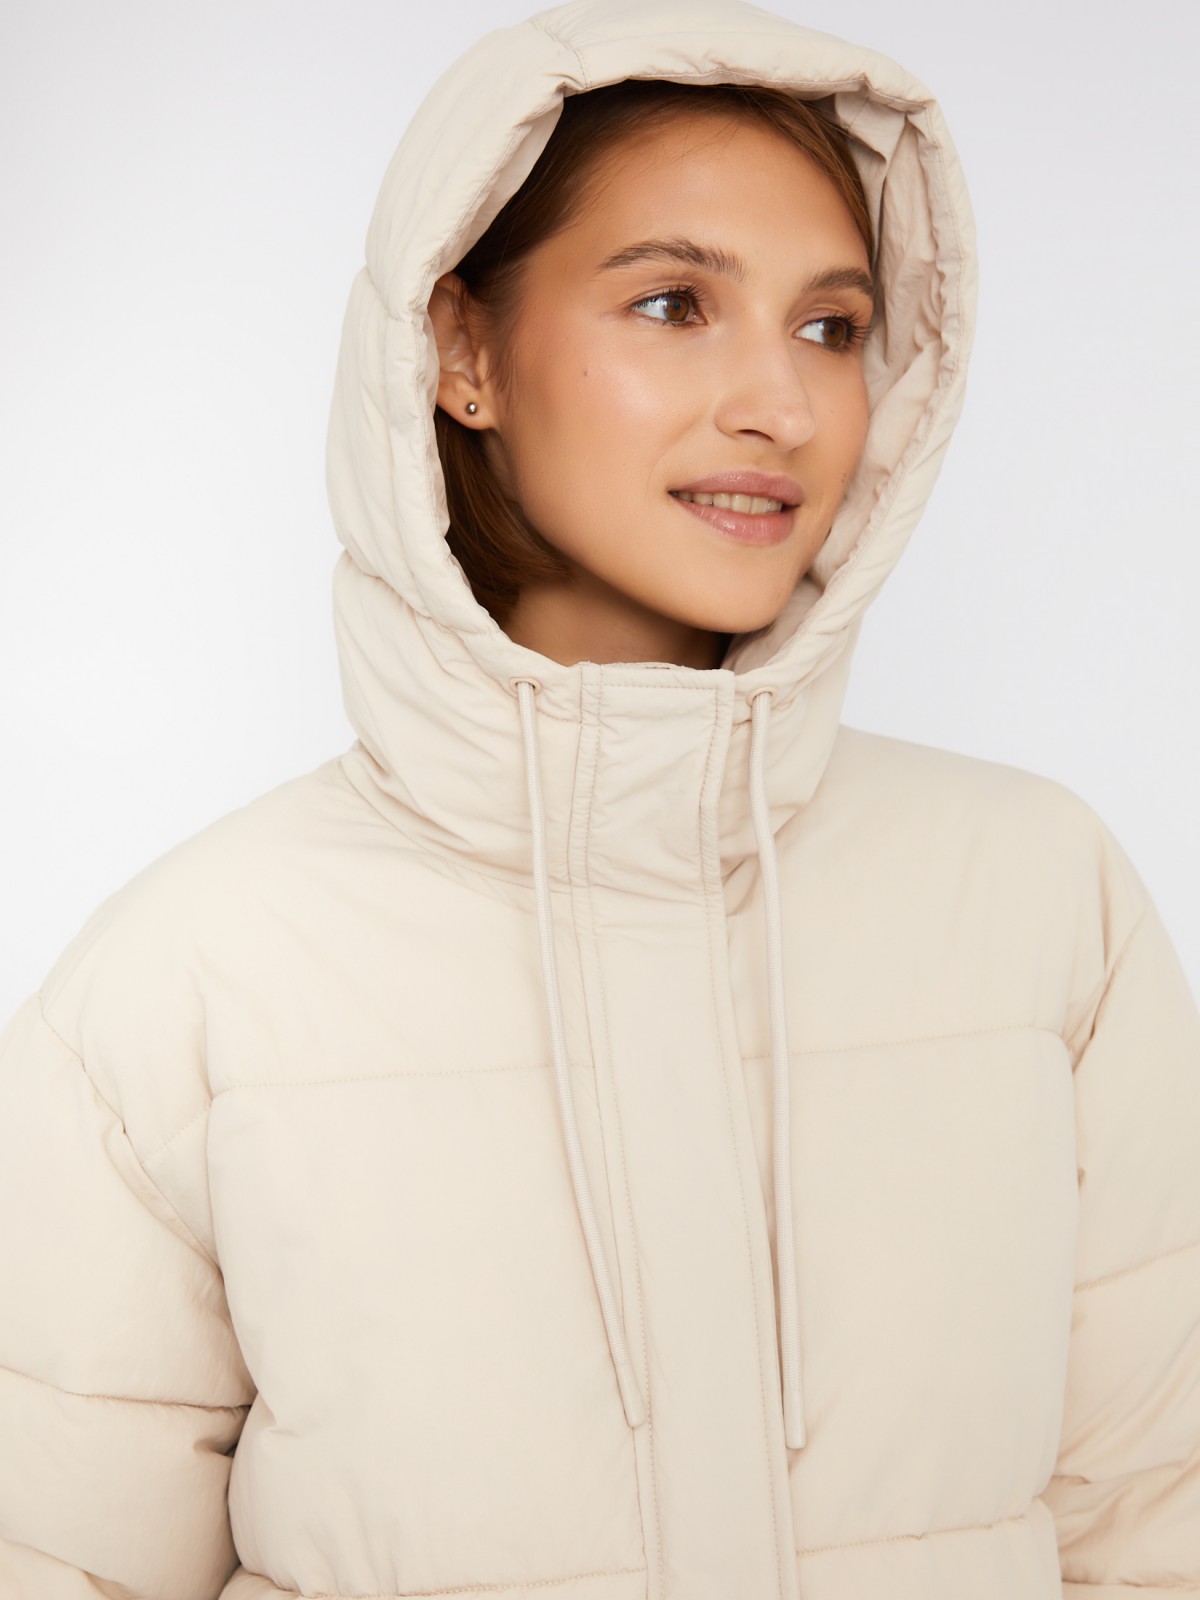 Длинная тёплая стёганая куртка-пальто с капюшоном zolla 023335202084, цвет молоко, размер XS - фото 4